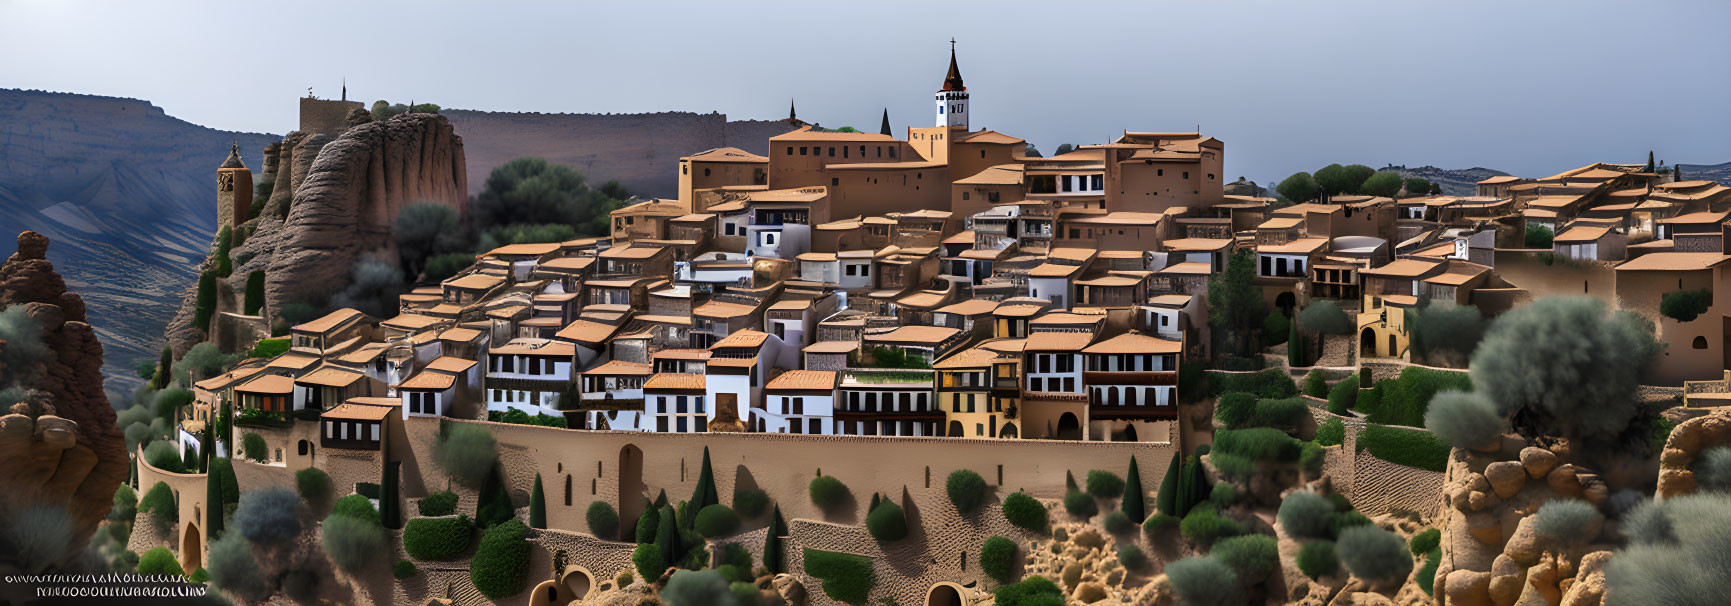 A Mediterranean spanish village